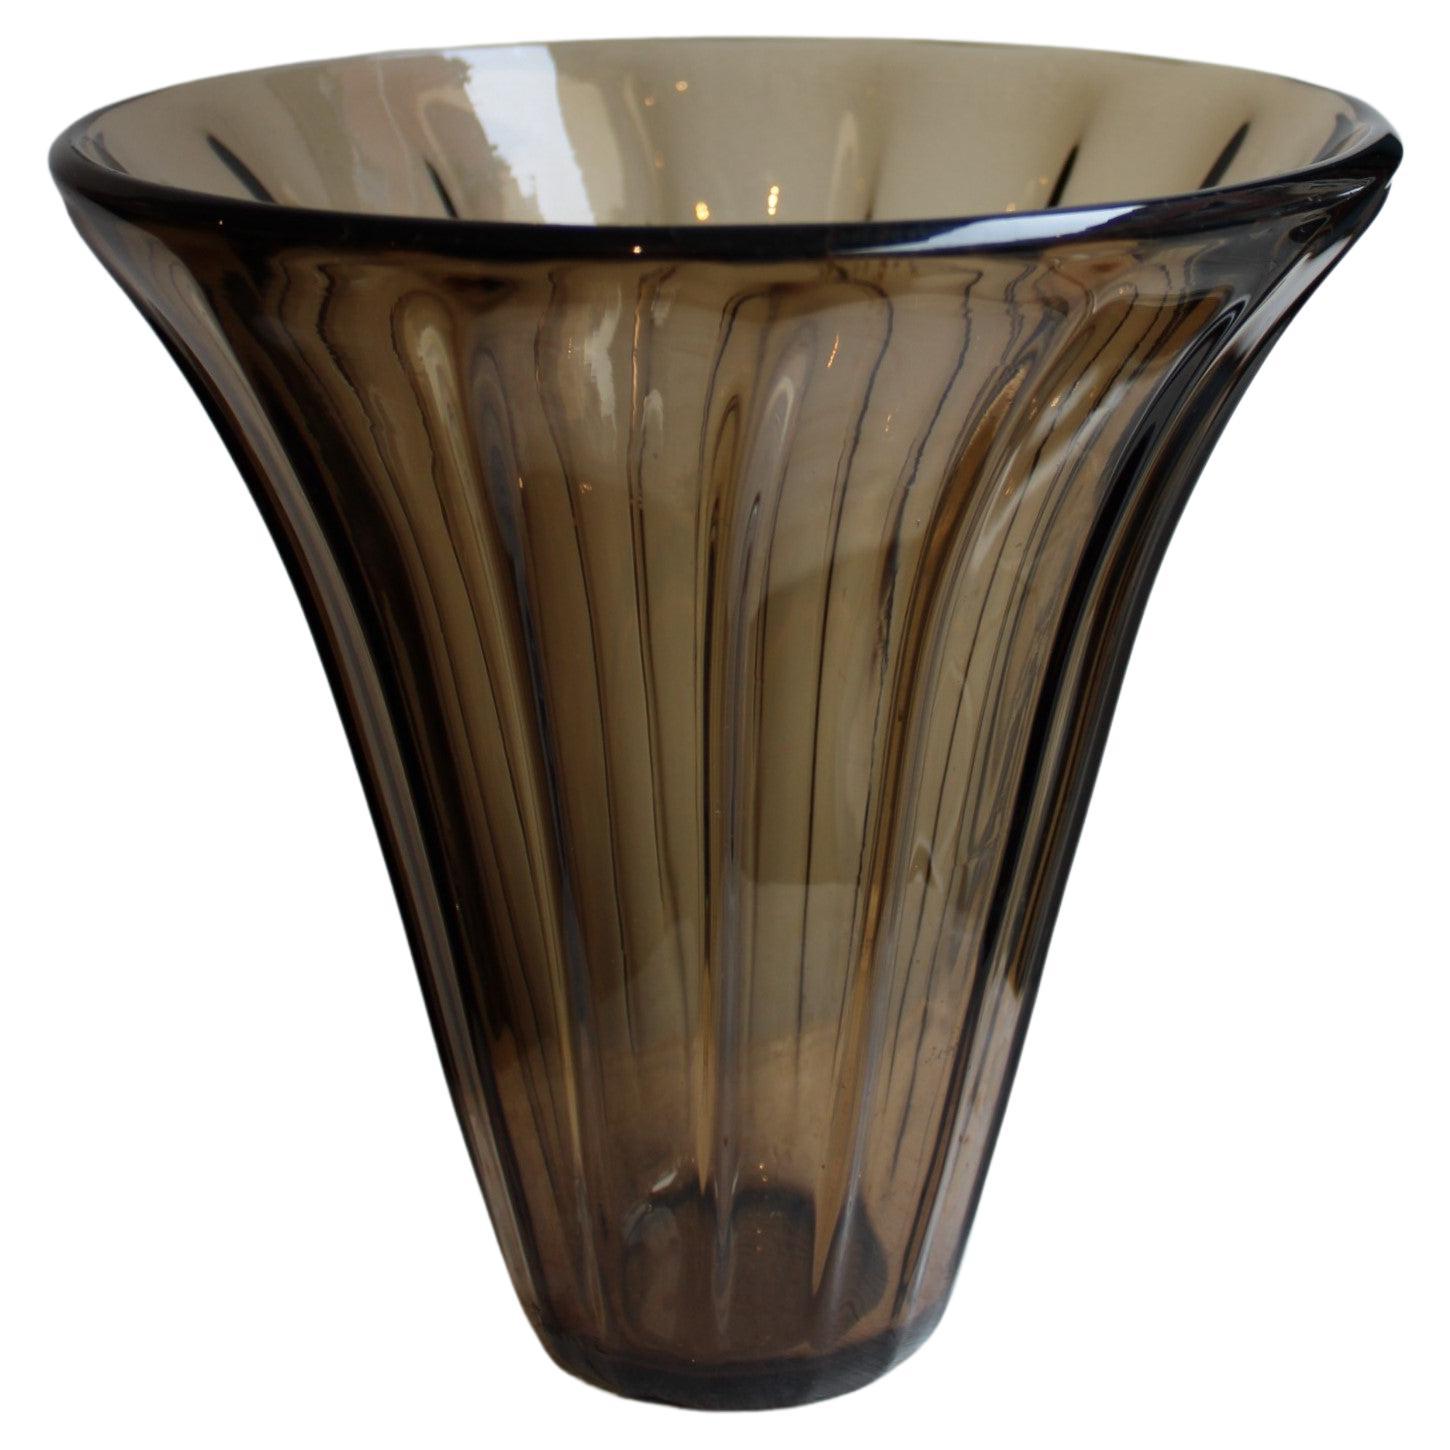 Daum vase, signed Daum Nancy France, 20th century 